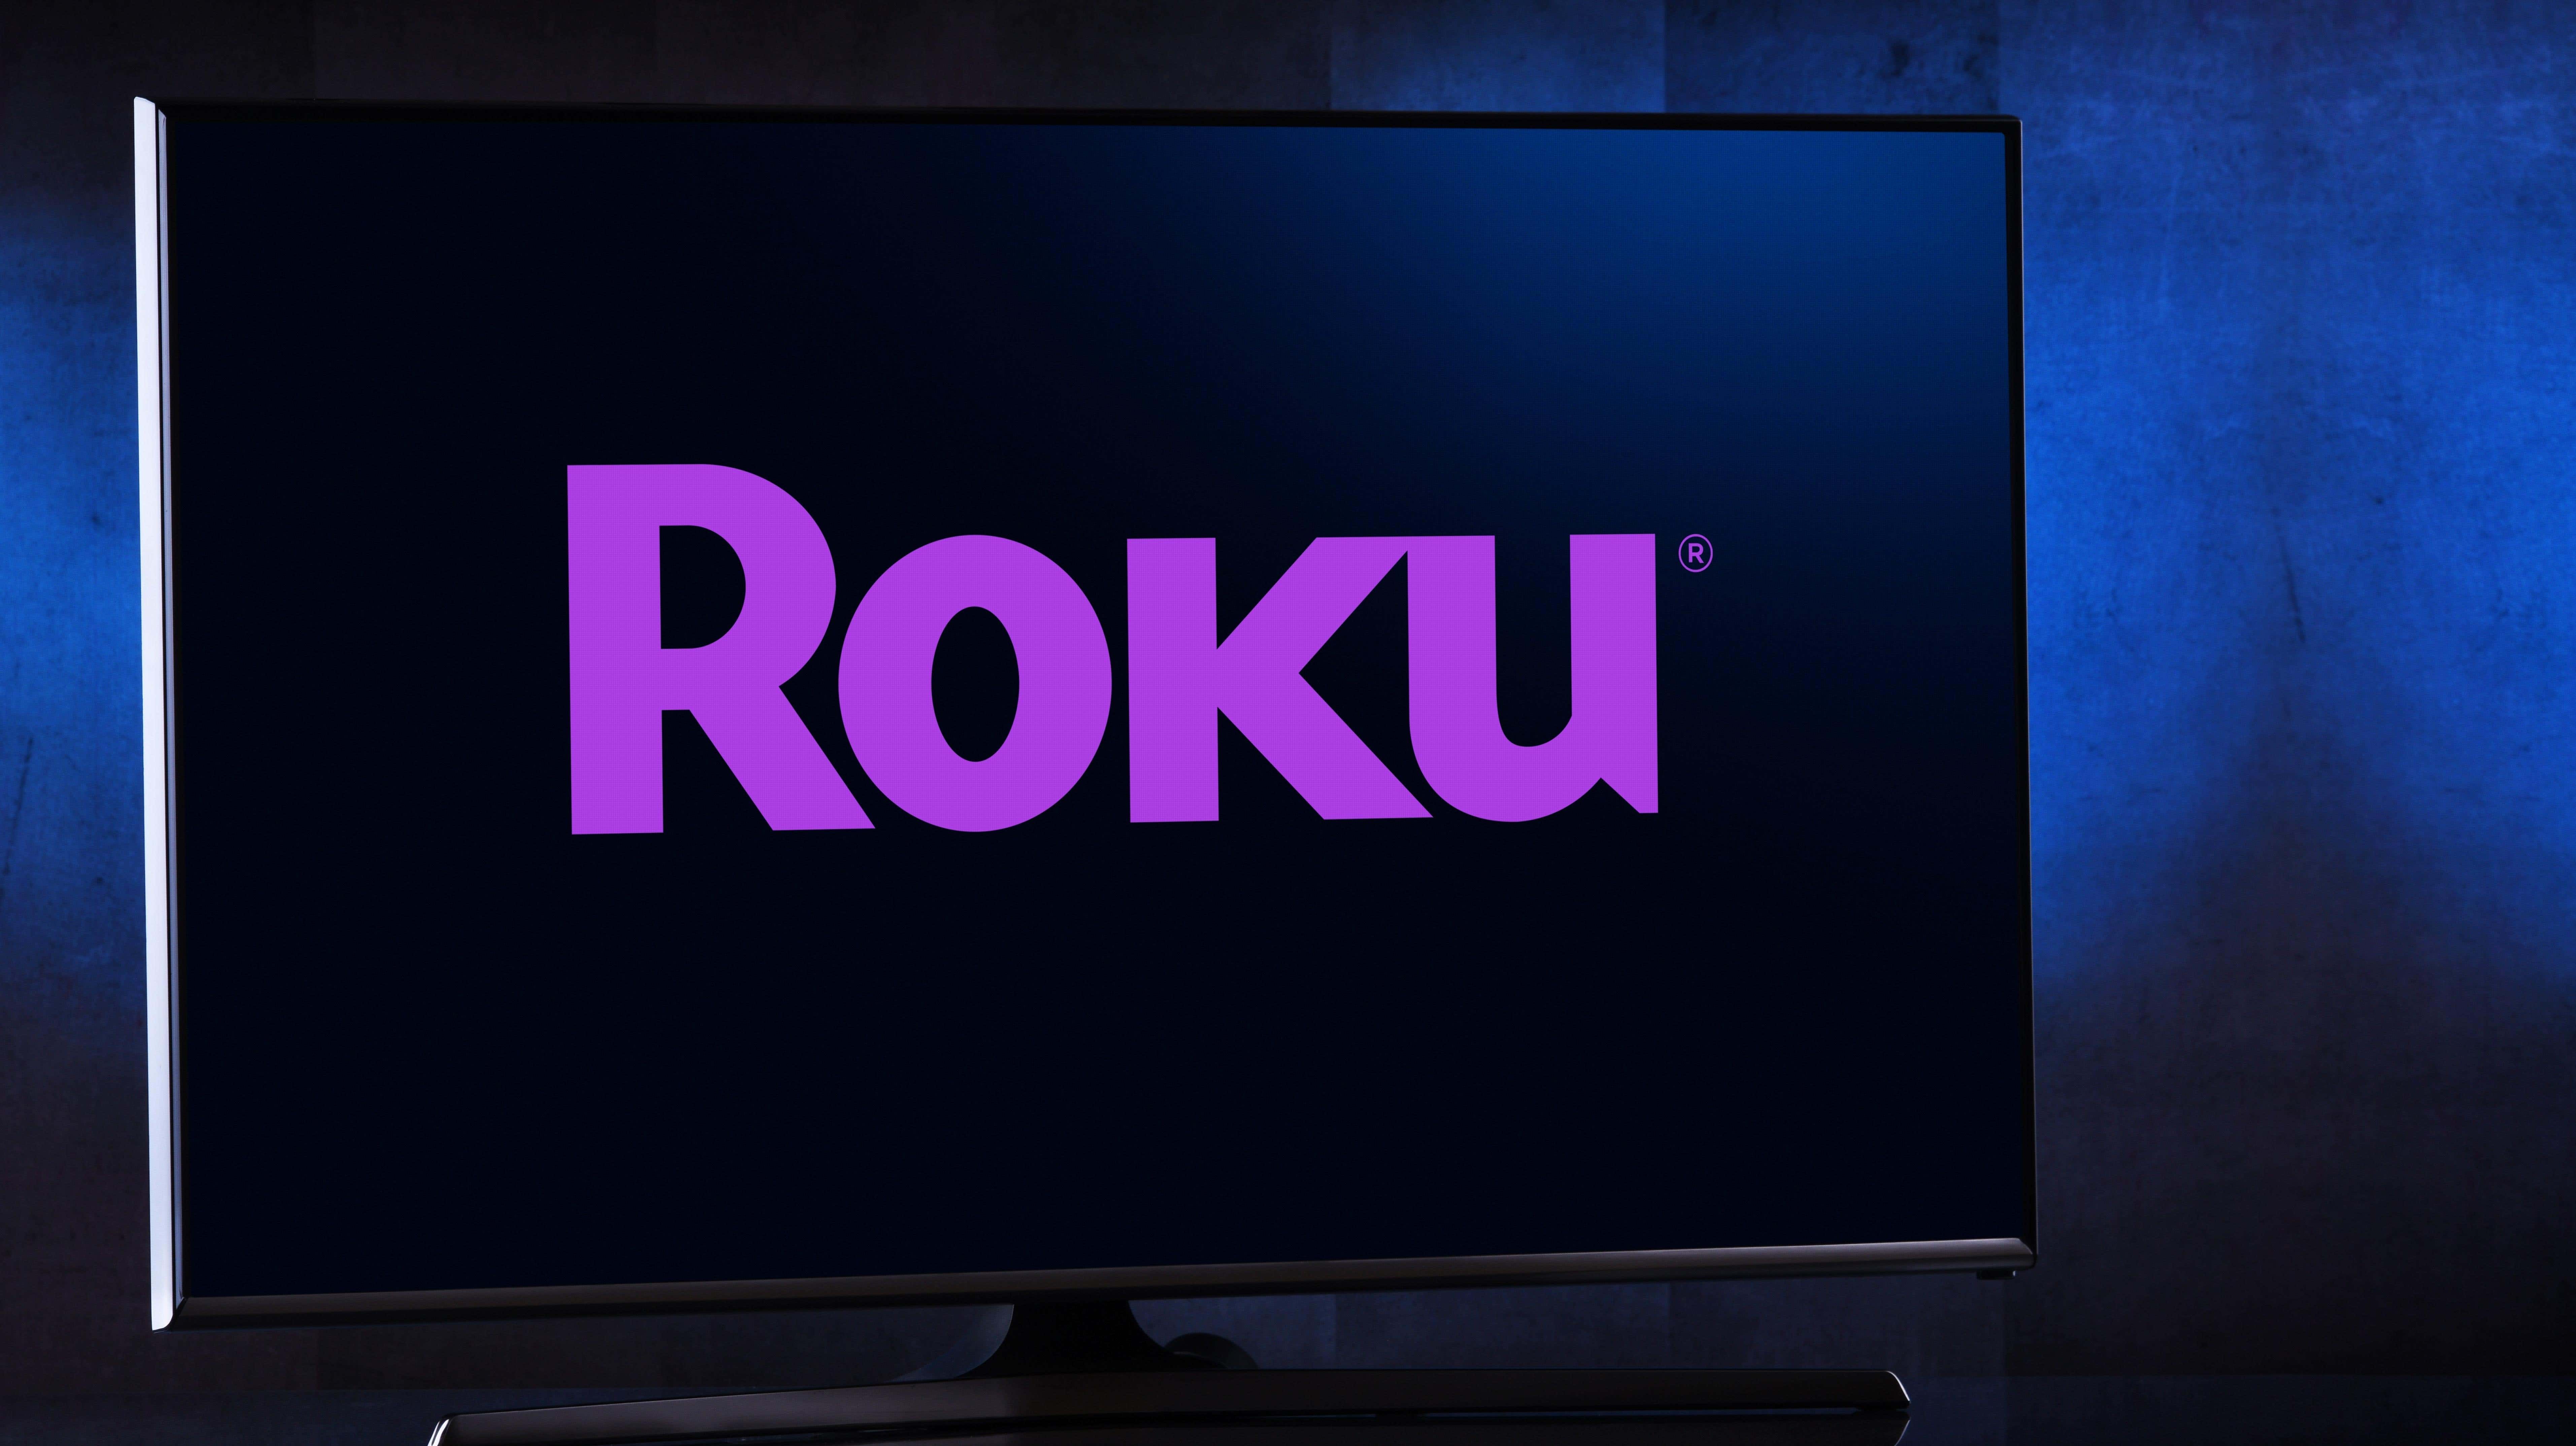 صورة لمقال بعنوان Roku سوف يزعج تلفزيونك إلا إذا وعدت بعدم رفع دعوى قضائية